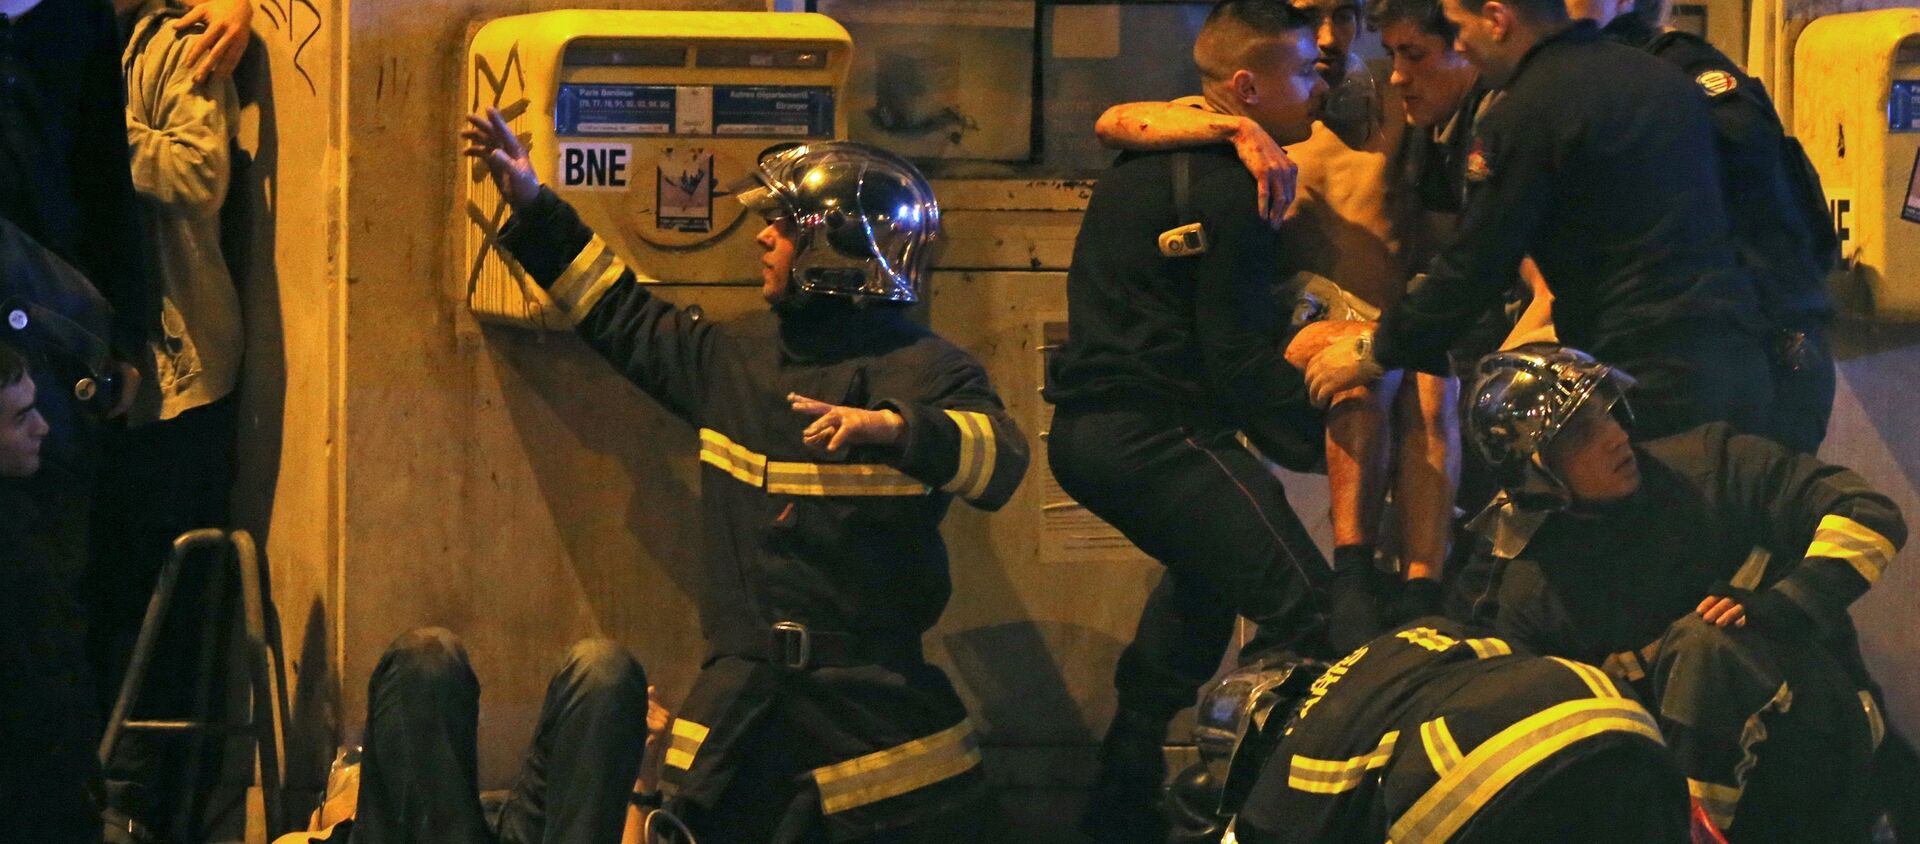 Француски ватрогасци помажу повређеном момку у близини Батаклан концертне дворане након пуцњаве у Паризу, Француска, 13. новембра 2015 - Sputnik Србија, 1920, 14.11.2015